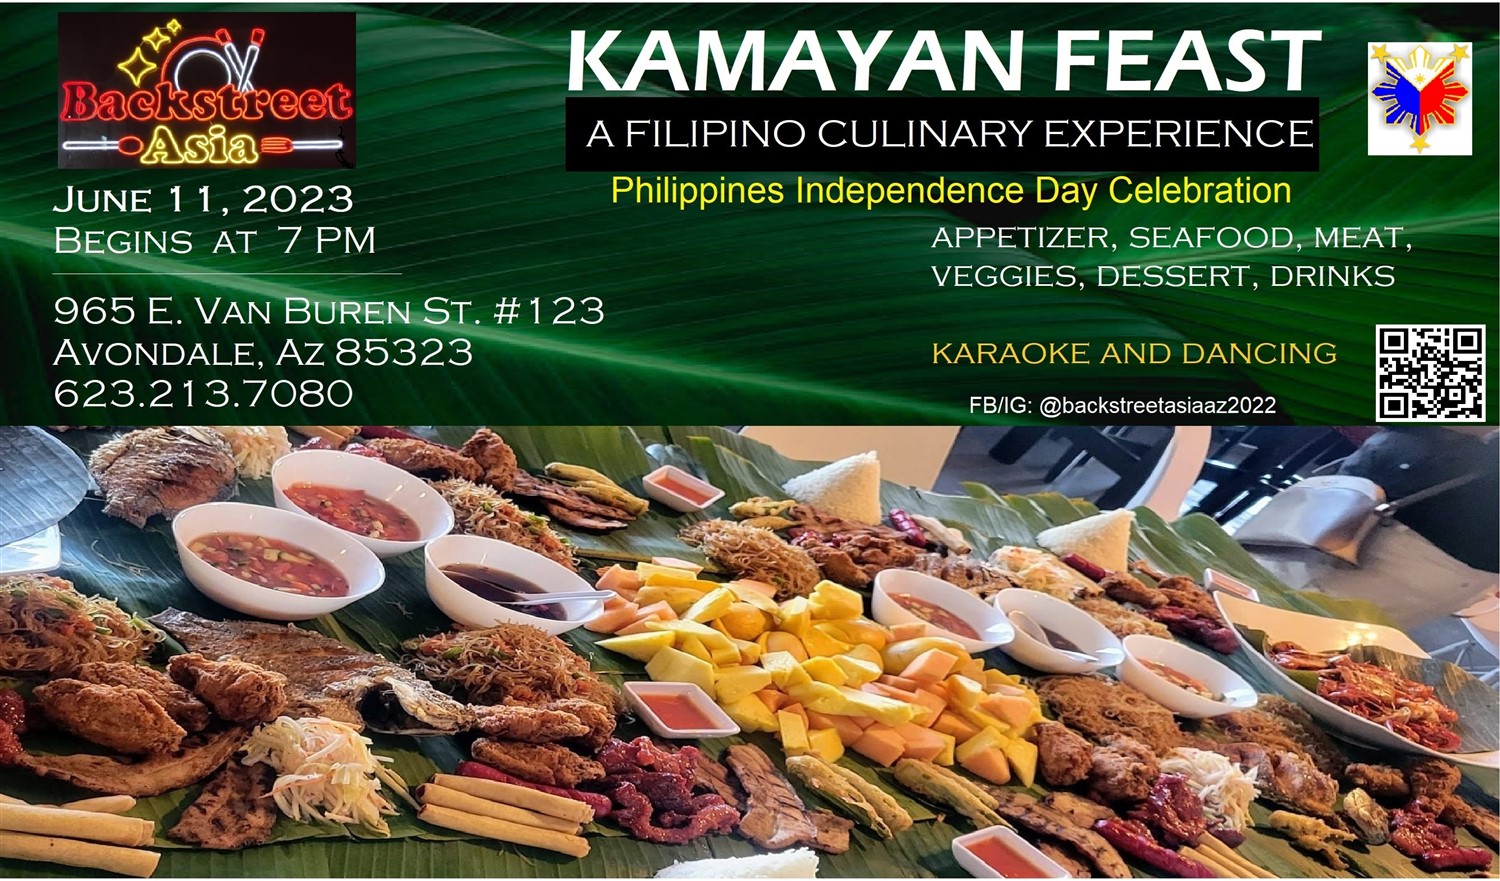 Kamayan Feast June 2023 Eat - Drink - Karaoke on Jun 11, 19:00@Backstreet Asia June 2023 - Pick a seat, Buy tickets and Get information on https://www.backstreetasiaaz.c 